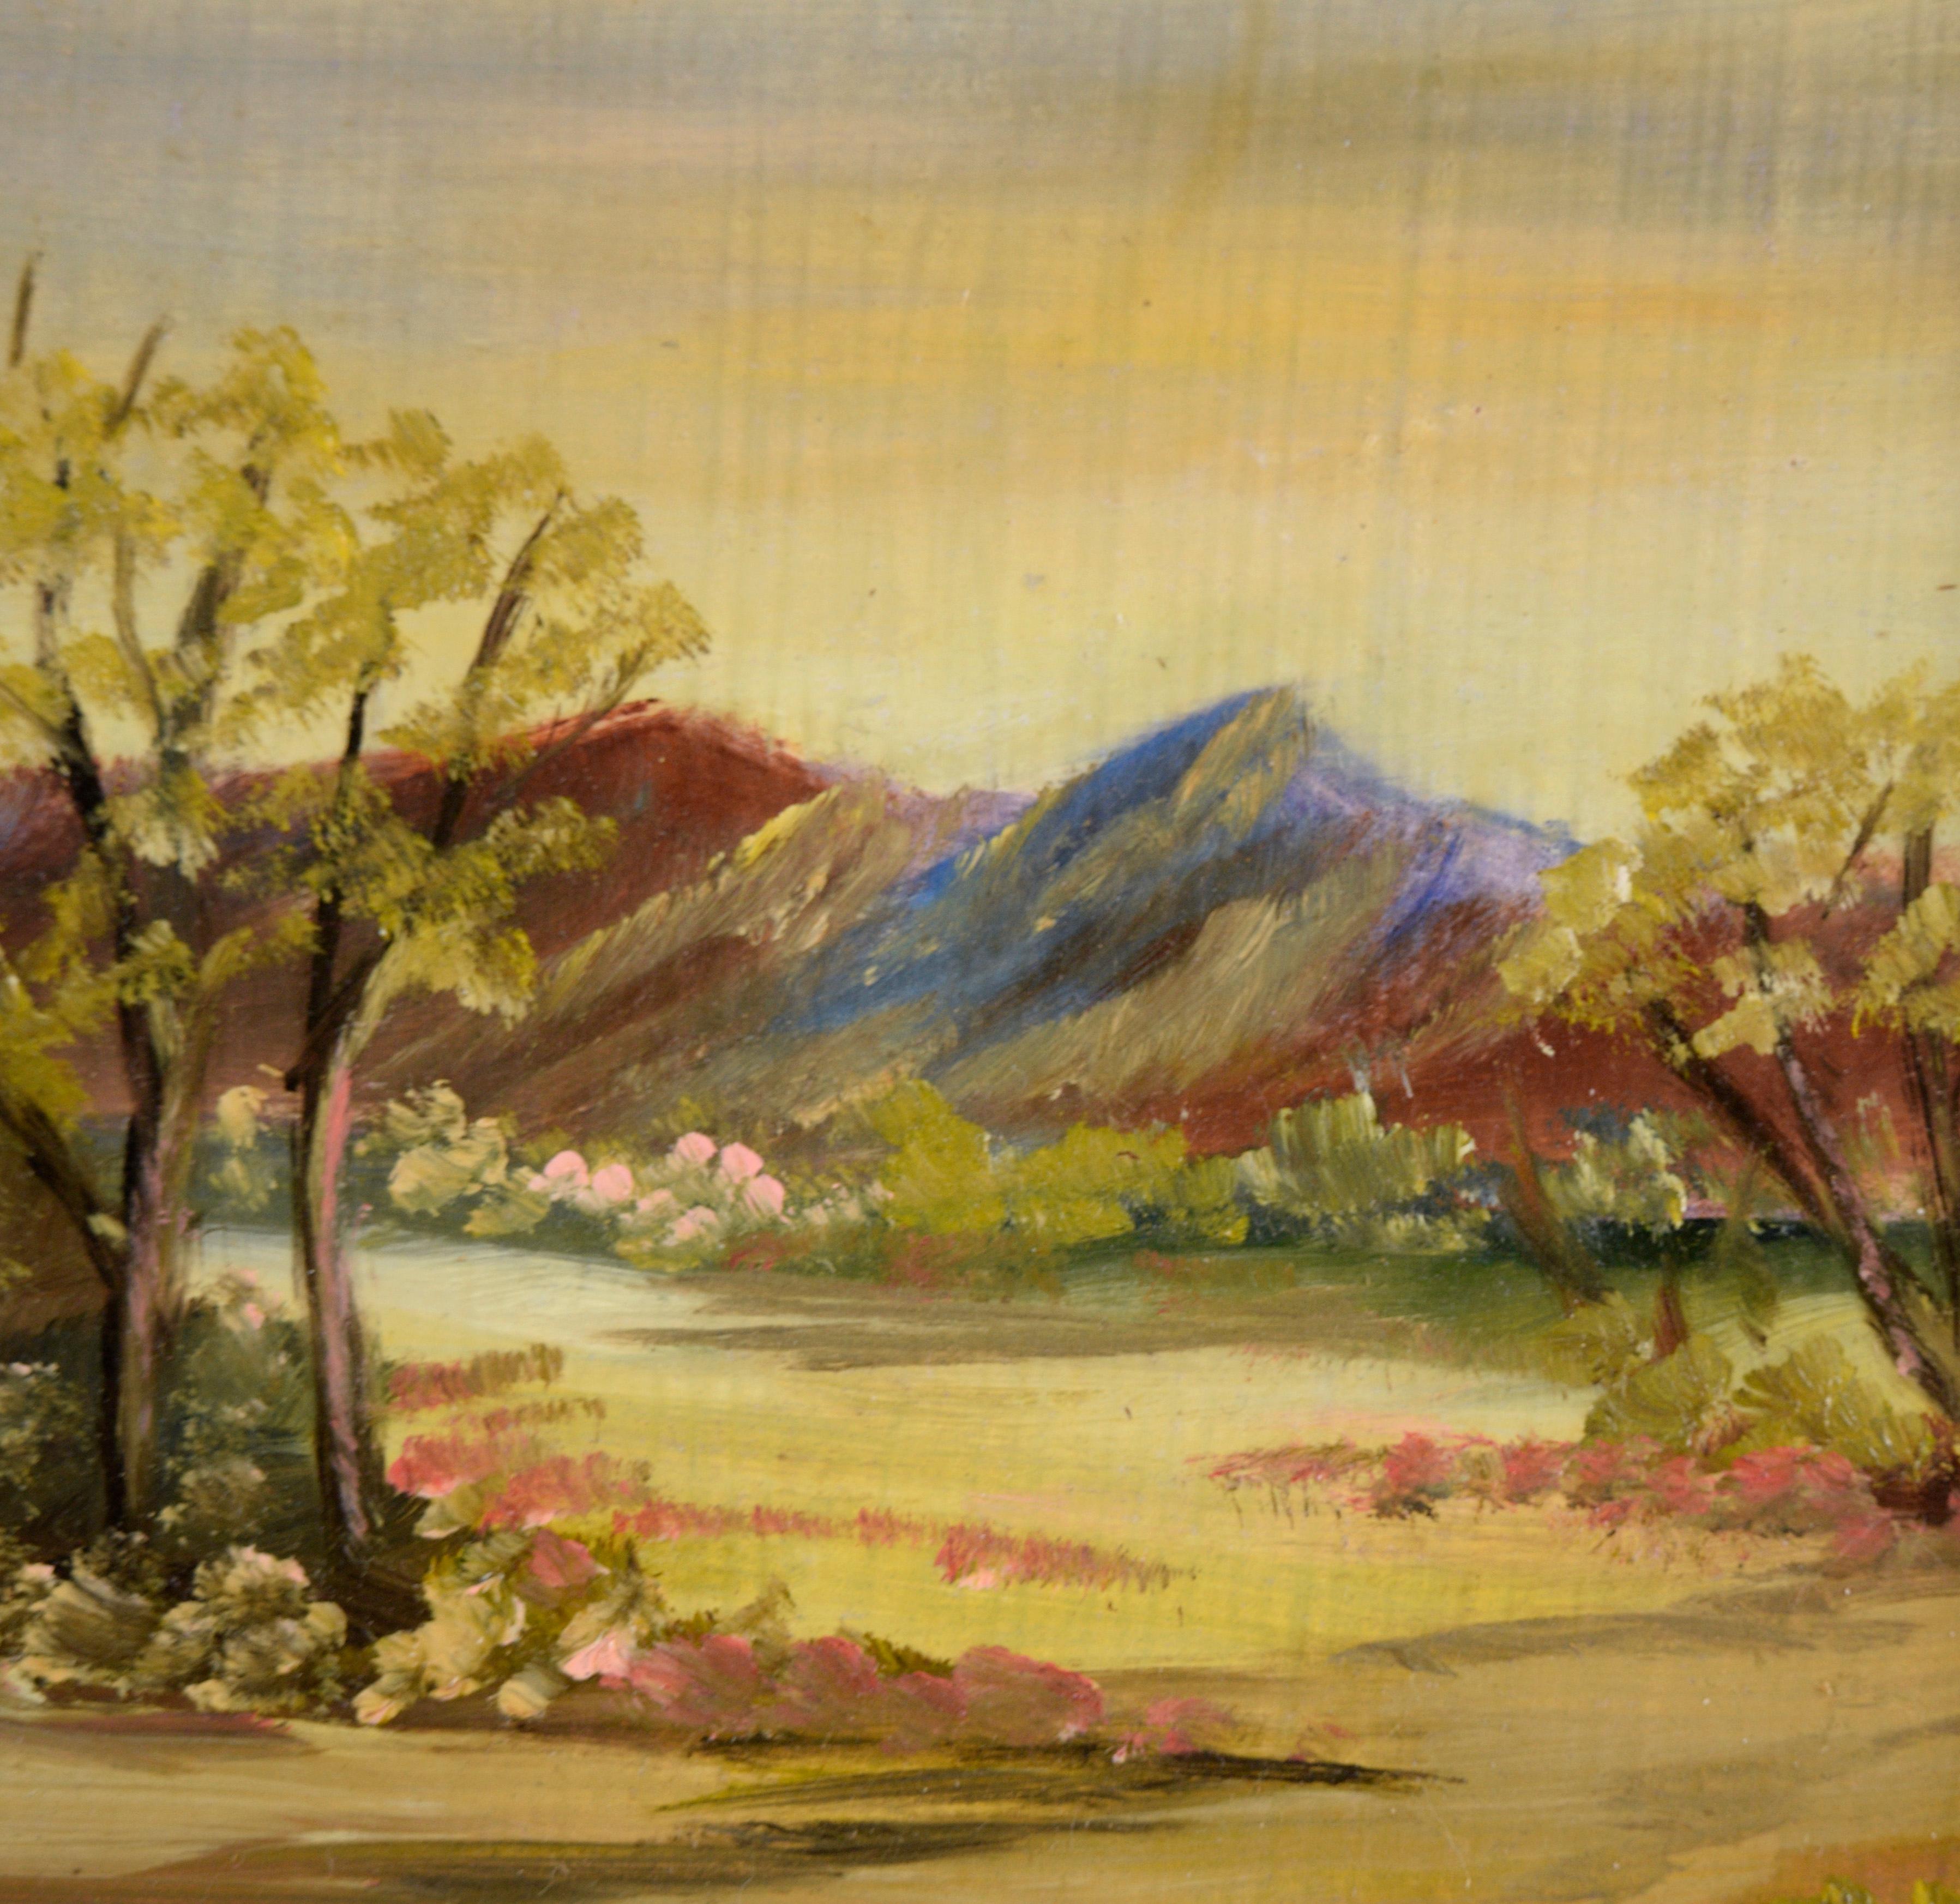 Spring Valley - Petit paysage Plein Air à l'huile sur Masonite

Paysage idyllique de vallée avec des montagnes au loin par Gibson (20e siècle). Des fleurs roses s'épanouissent dans tout le paysage, avec une poignée d'arbres vert clair de part et